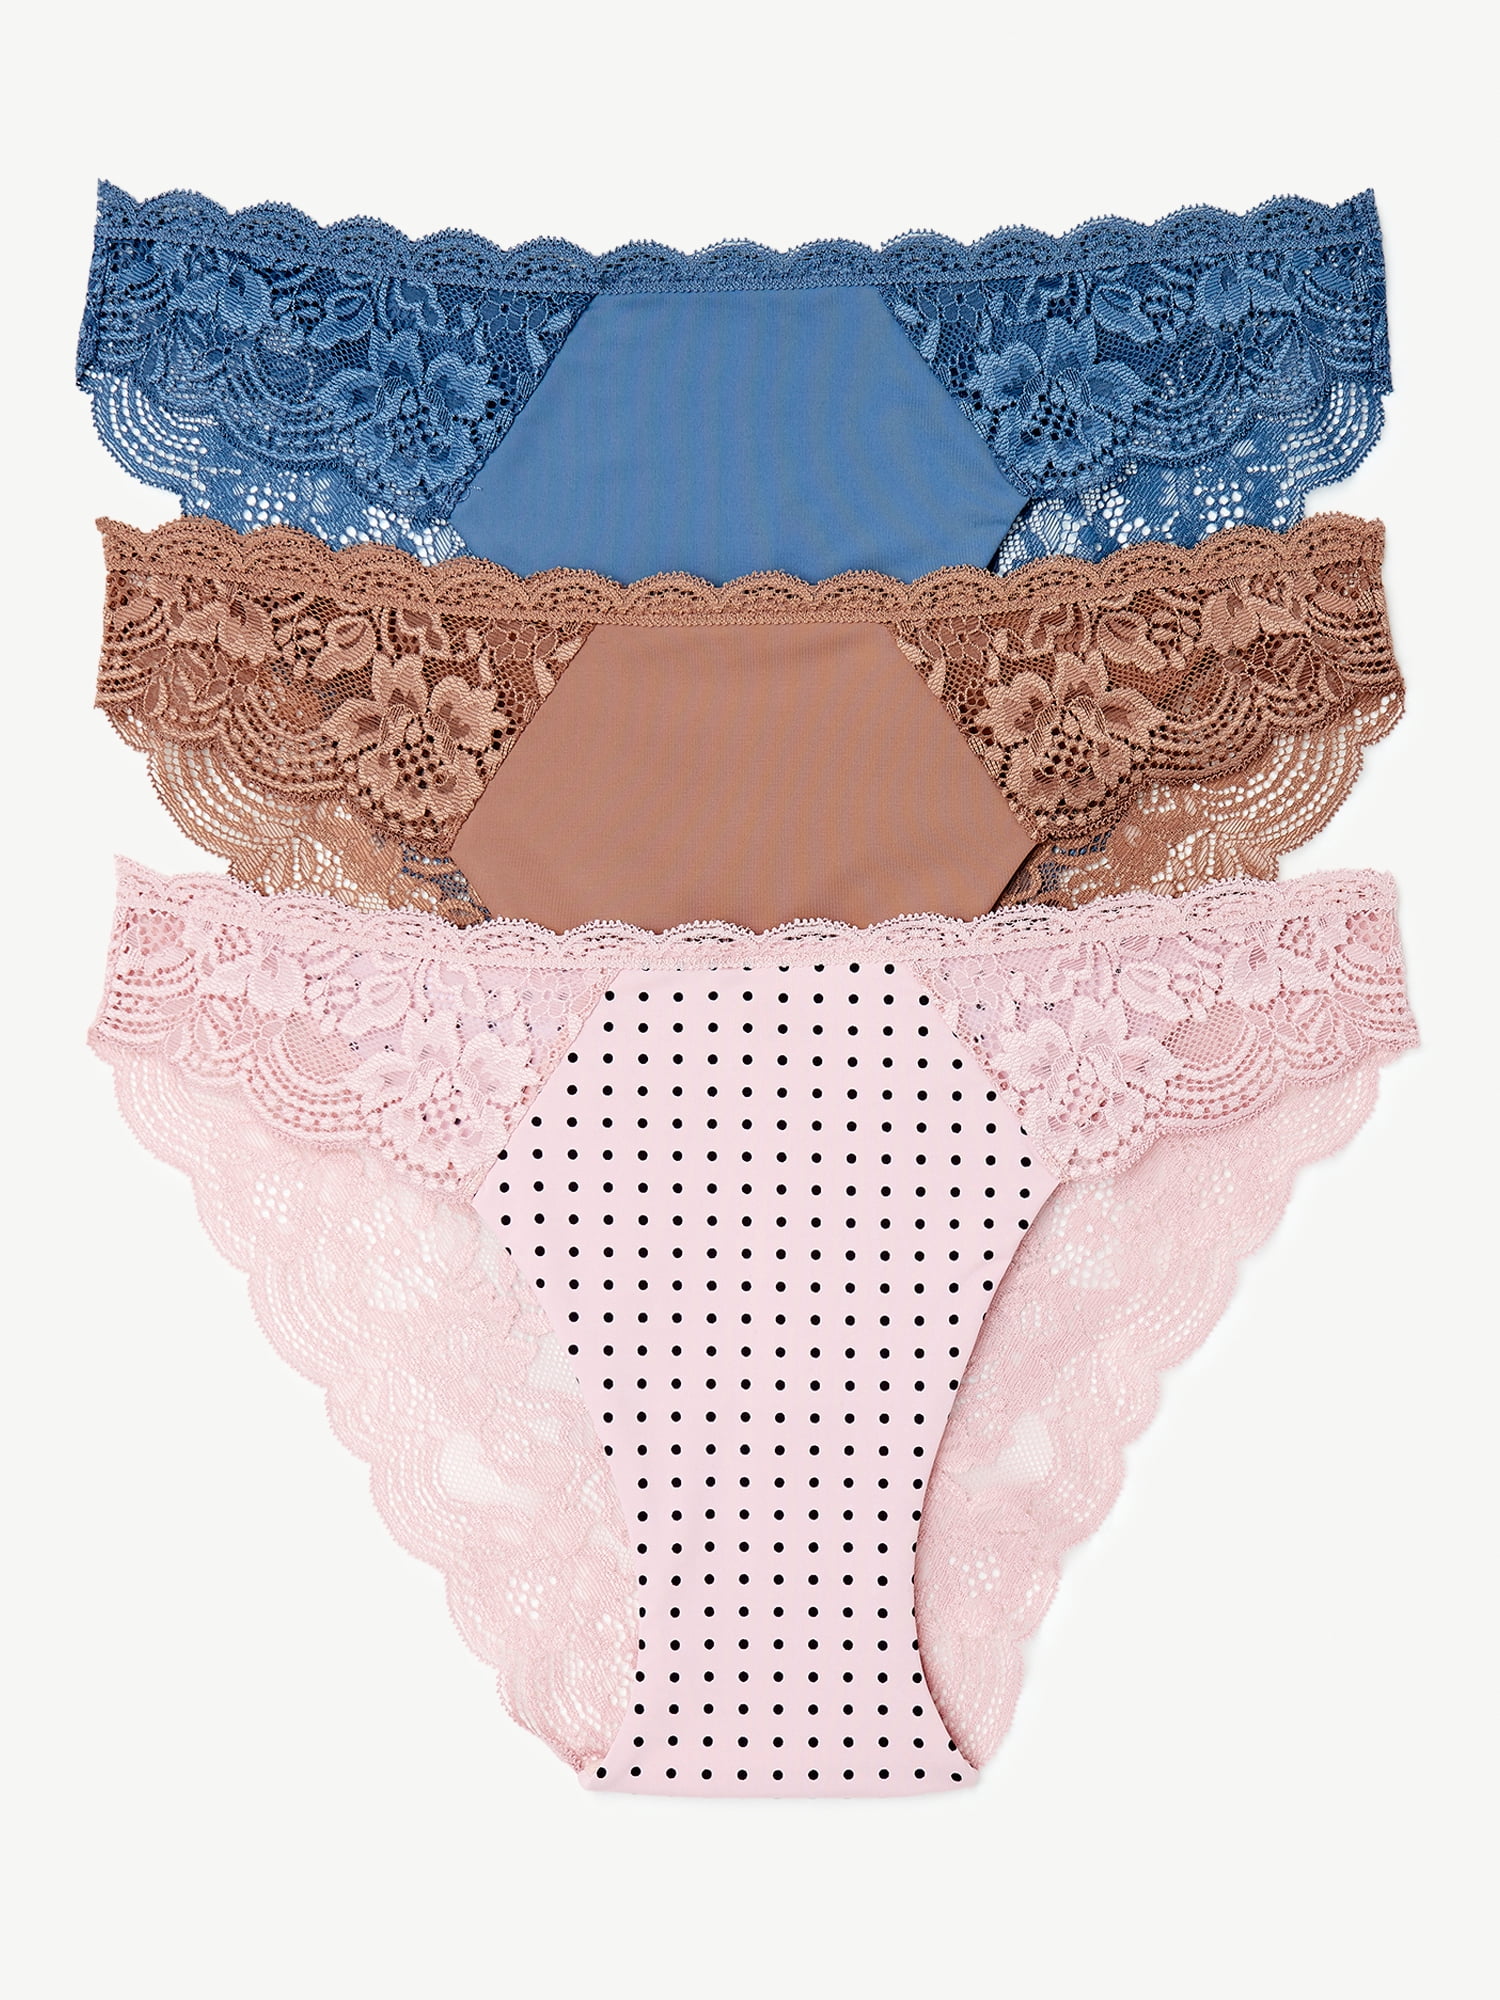 Buy Joyspun Women S Cheeky Panties 3 Pack Sizes To 3xl Online At